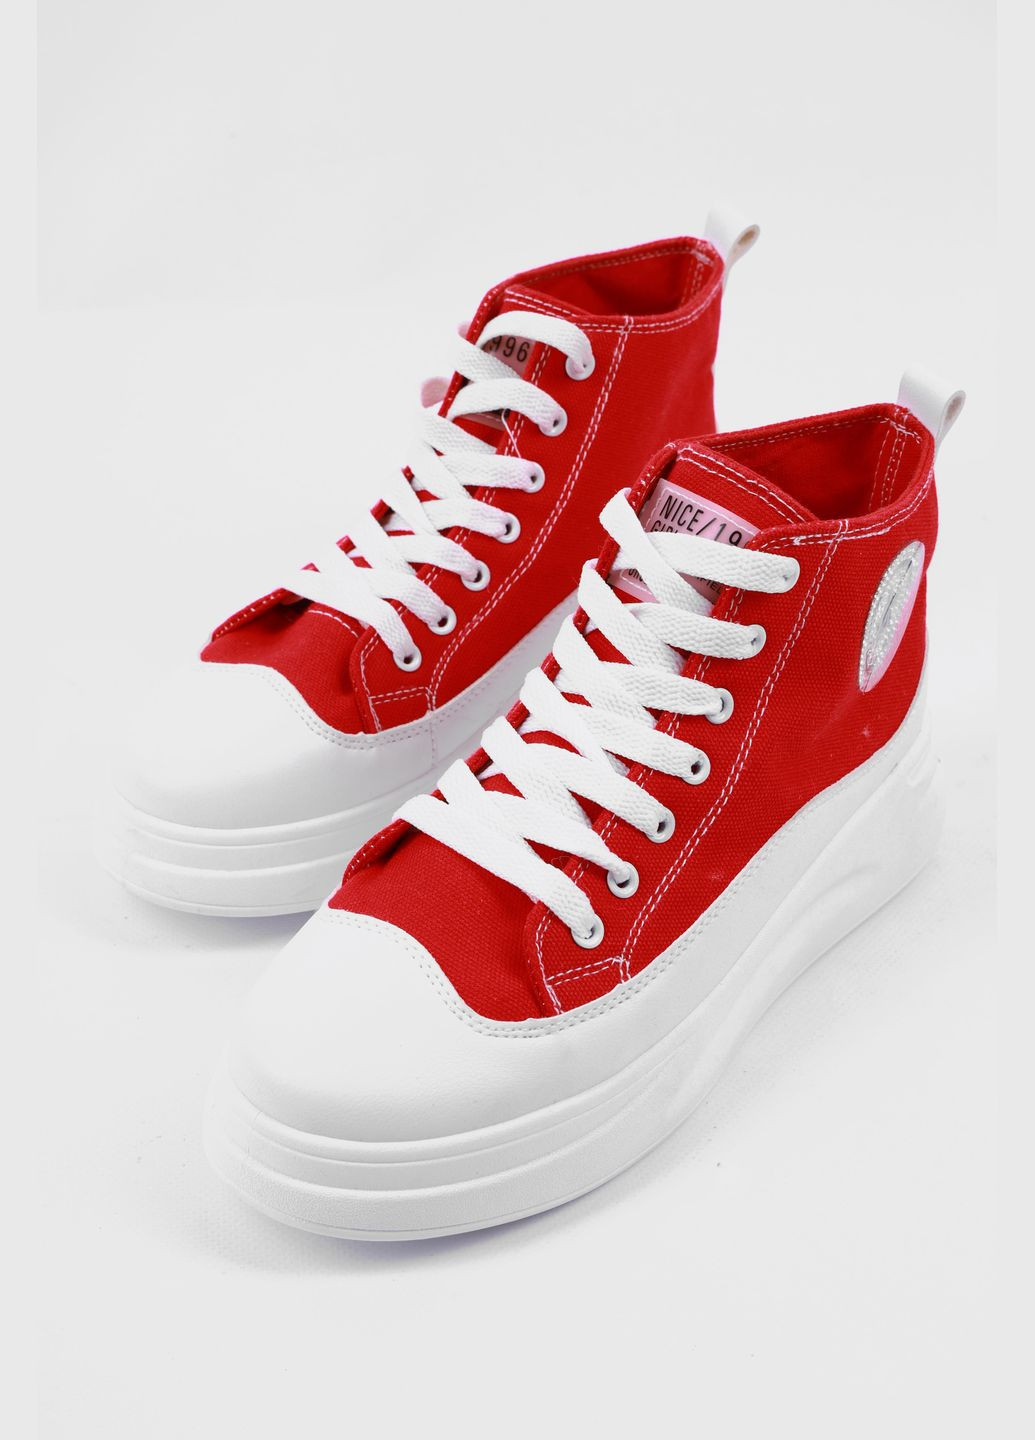 Красные демисезонные кроссовки женские красного цвета на шнуровке Let's Shop